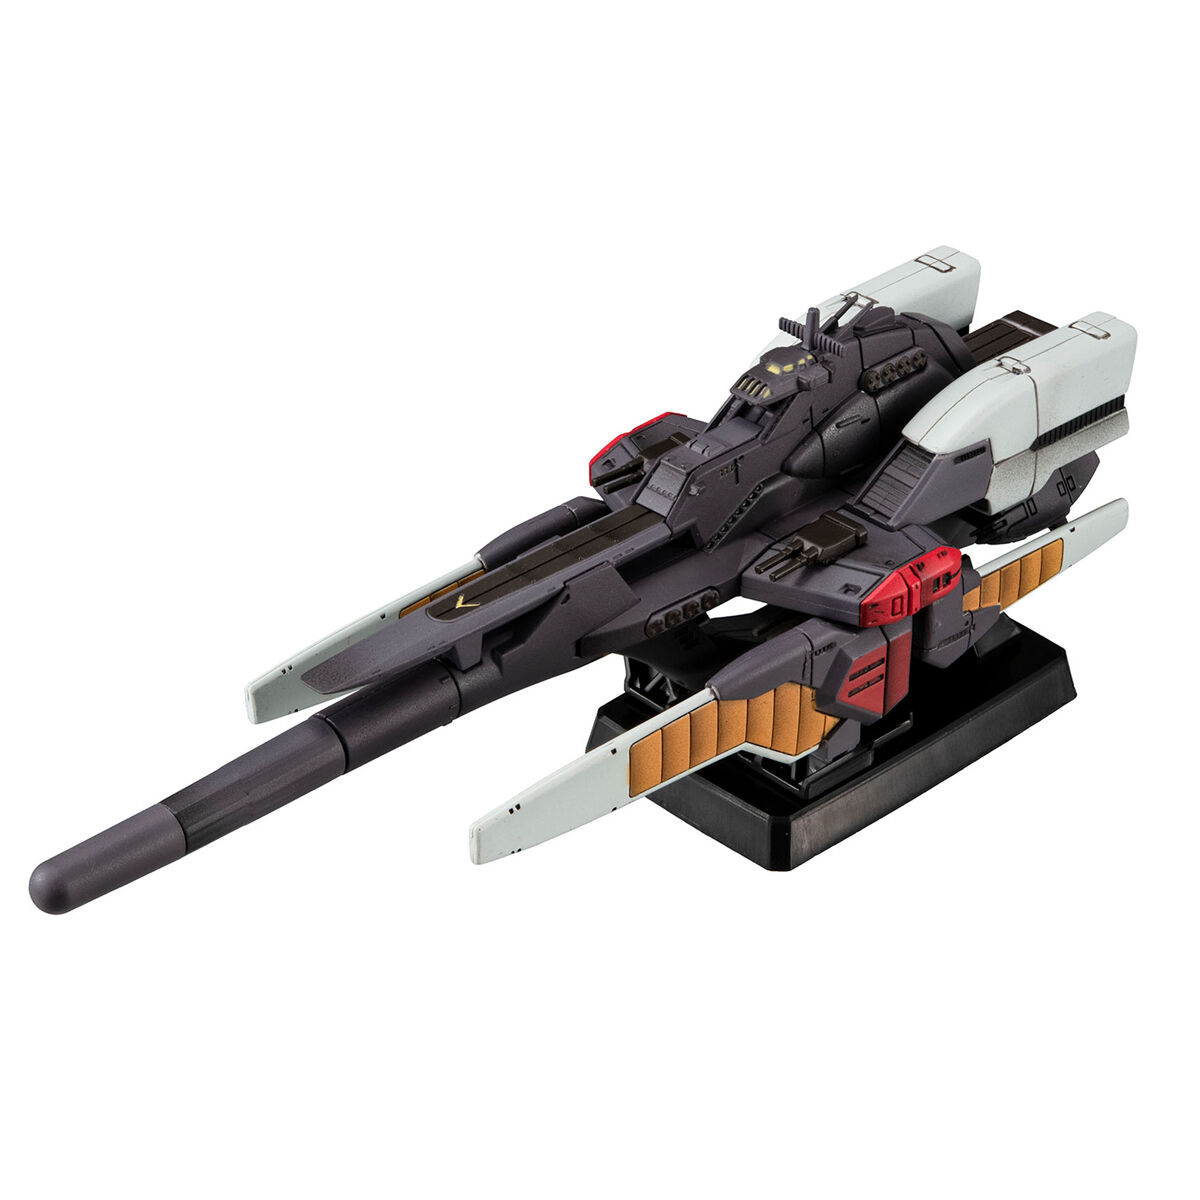 コスモフリートスペシャル『リーンホースJr.Re.』機動戦士Vガンダム 完成品モデル-001